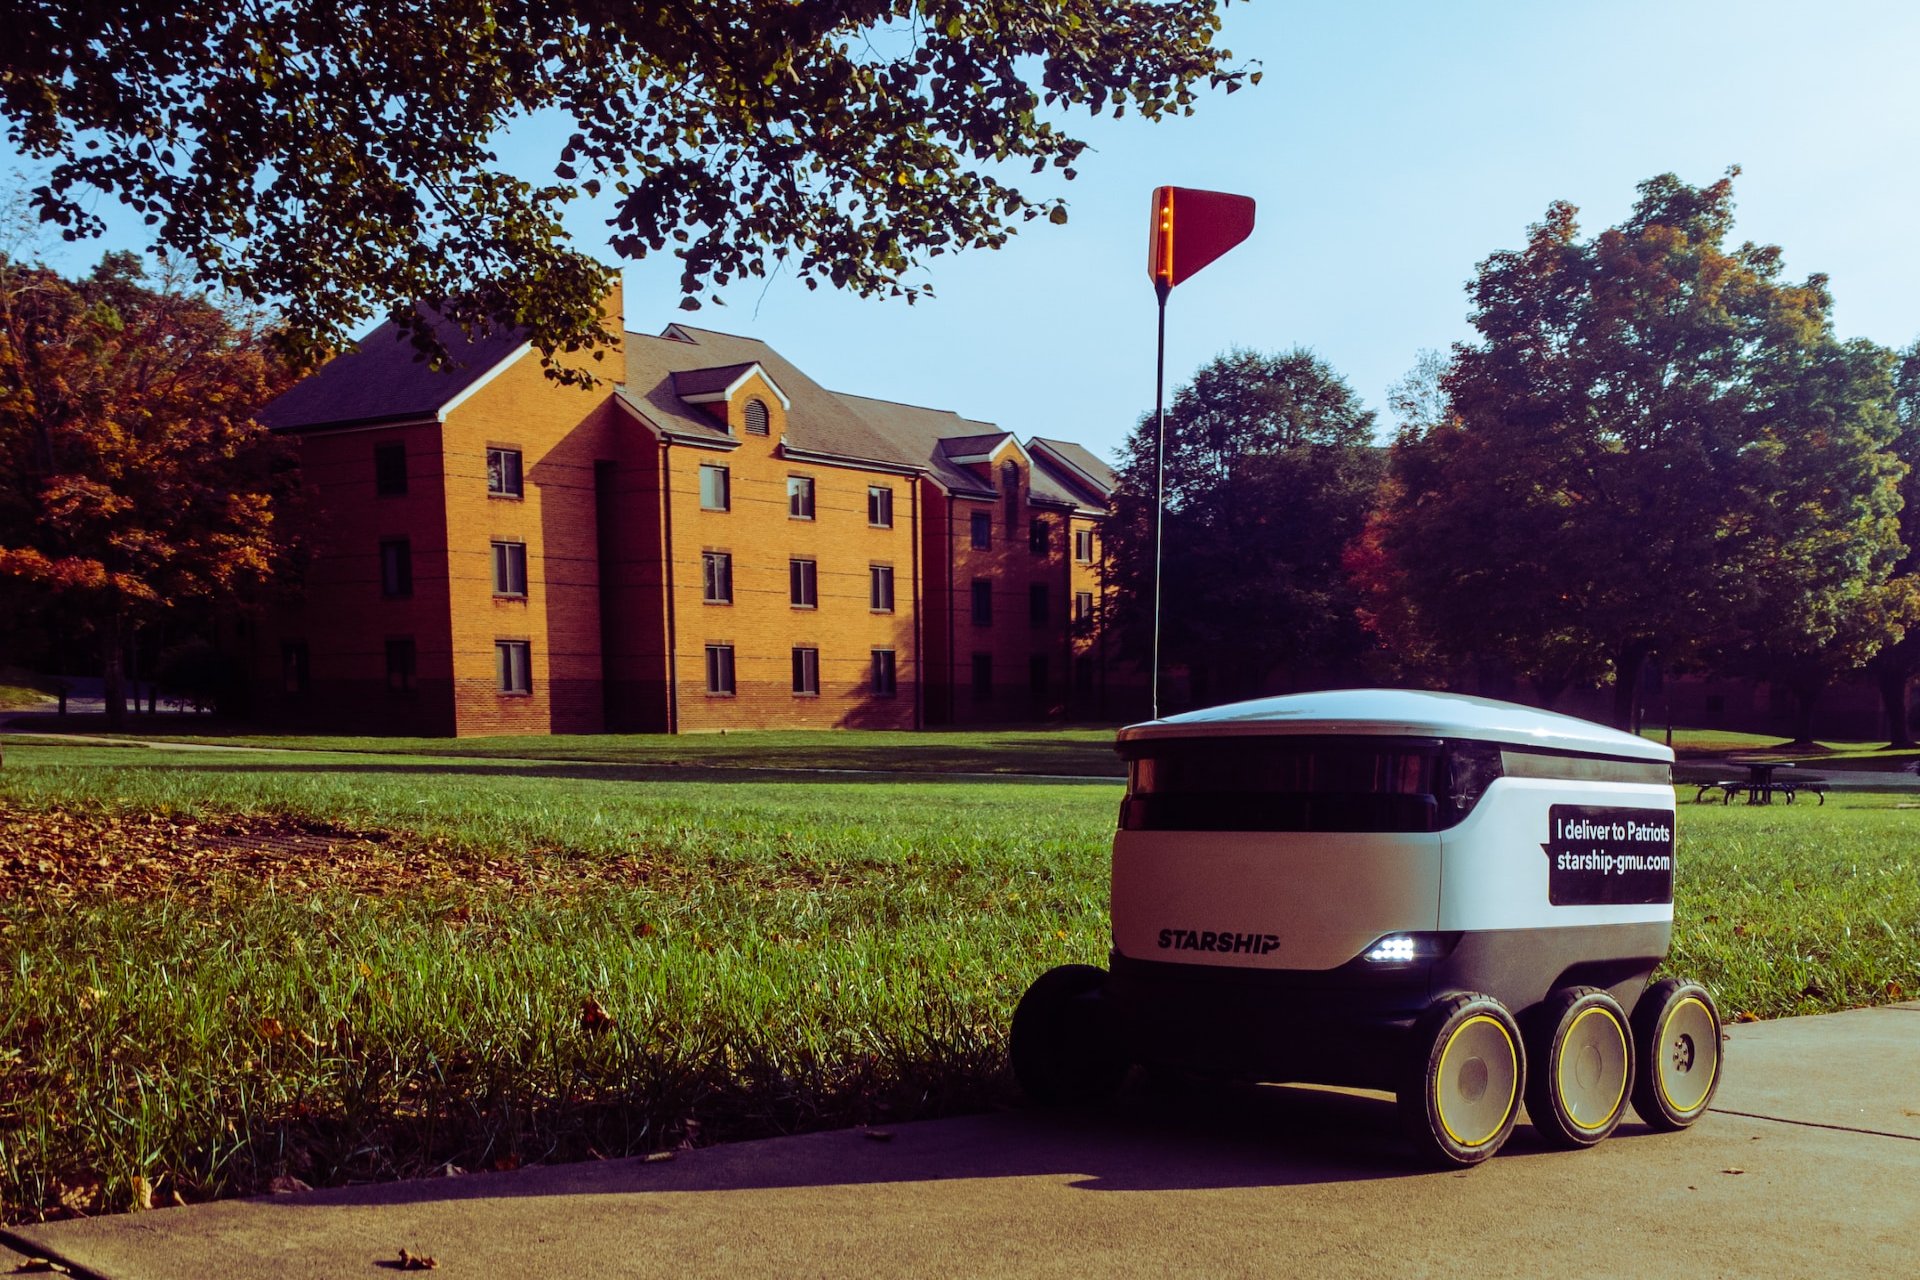 How Could Autonomous Delivery Robot Technology Bring Positive Changes?